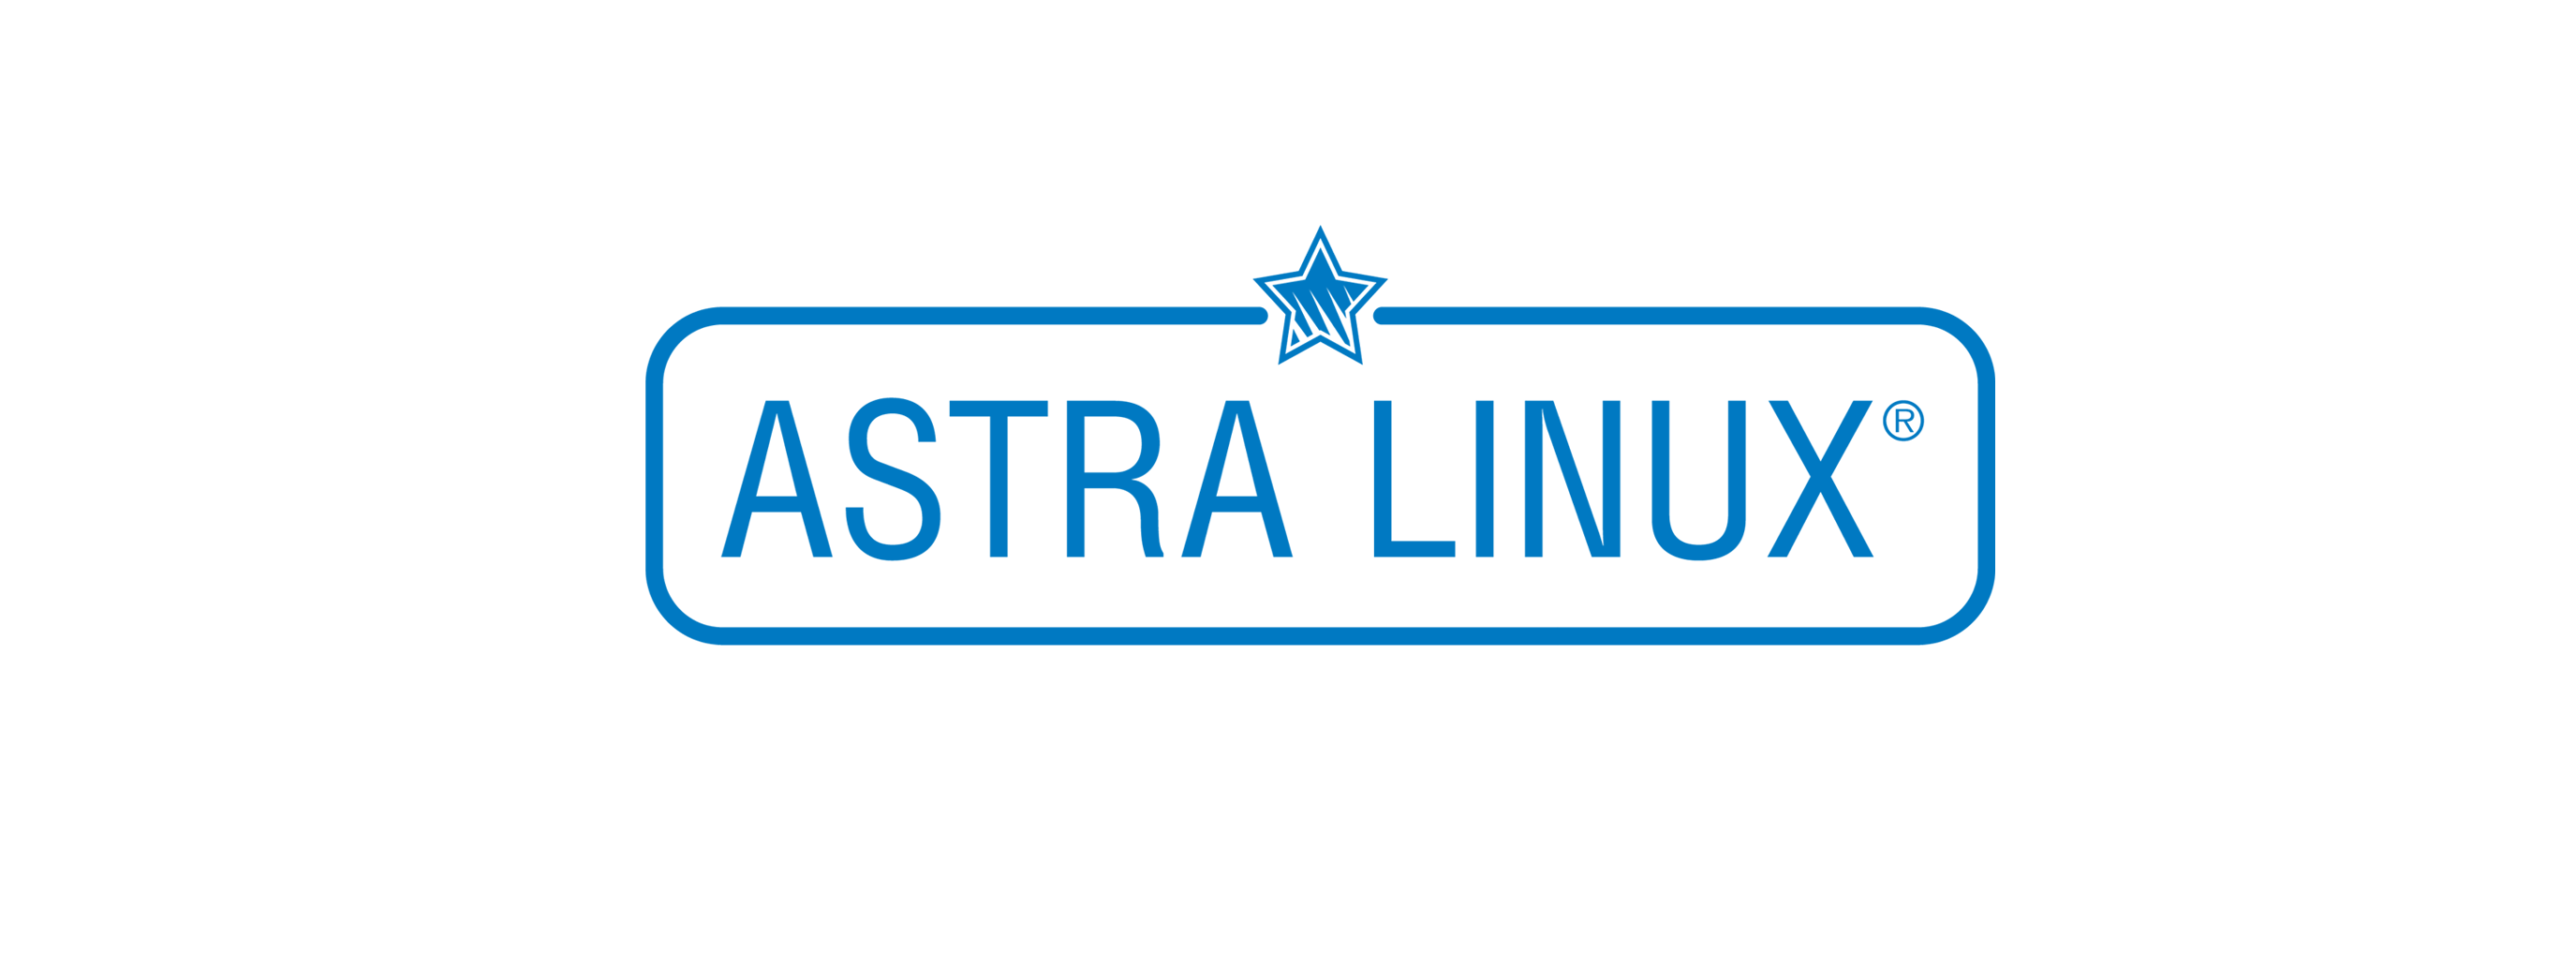 Лицензия РусБИТех Astra Linux Special Edition (очередное обновление 1.7), уровень защищенности Максимальный (Смоленск), РУСБ.10015-01 (МО), Russian, на срок действия исключительного права базовая лицензия для рабочей станции, электронный ключ (OS2102X8617COP000WS01-SO24)